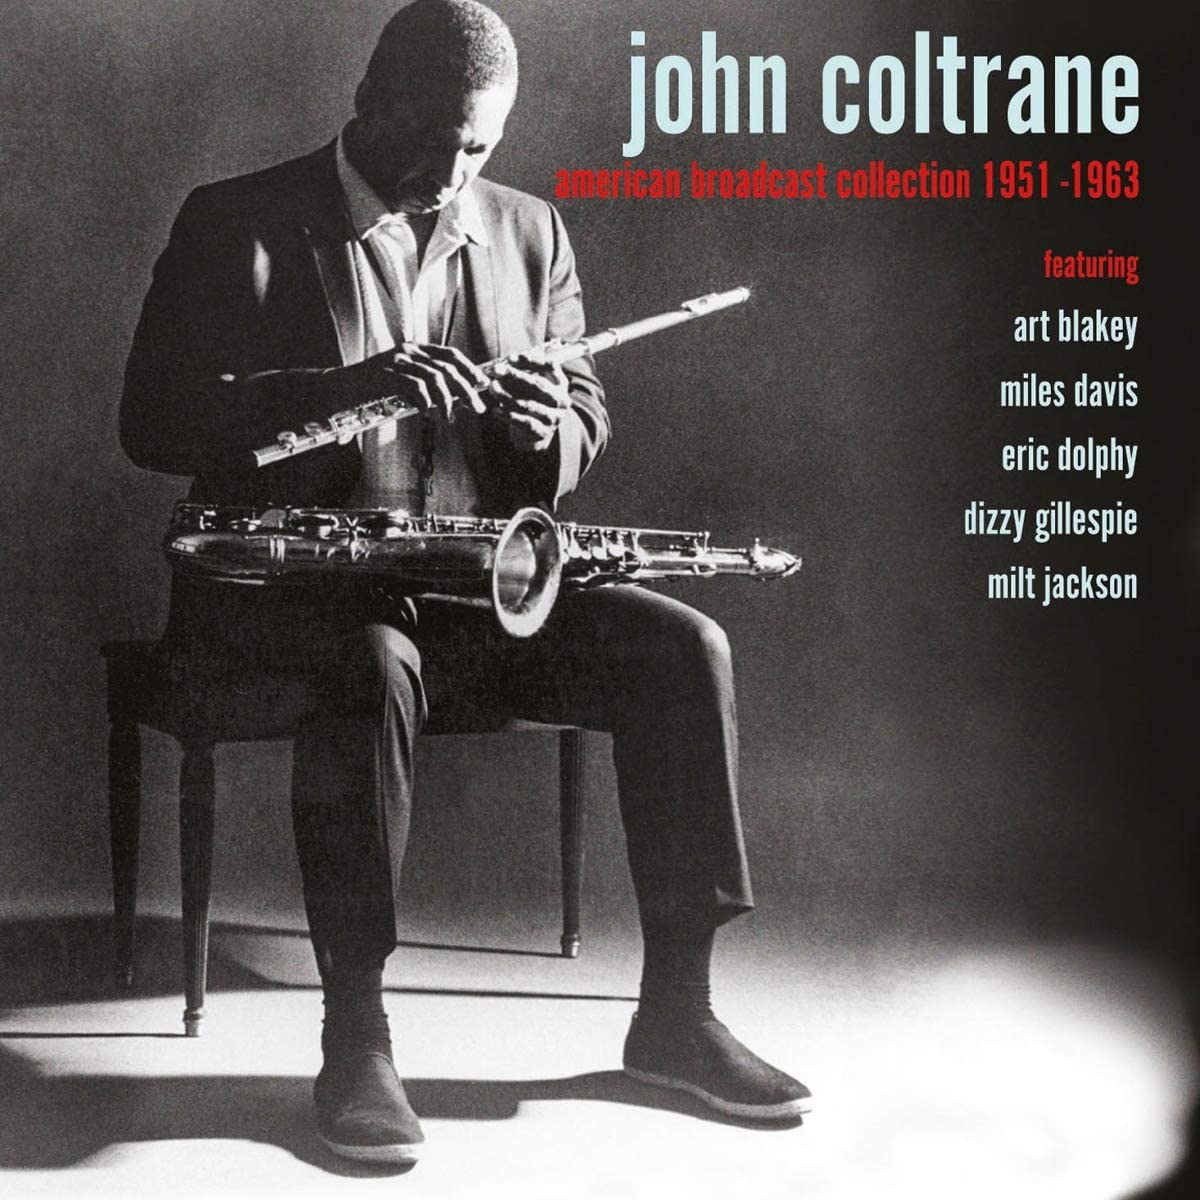 Audio Cd John Coltrane - American Broadcast Collection (6 Cd) NUOVO SIGILLATO SUBITO DISPONIBILE